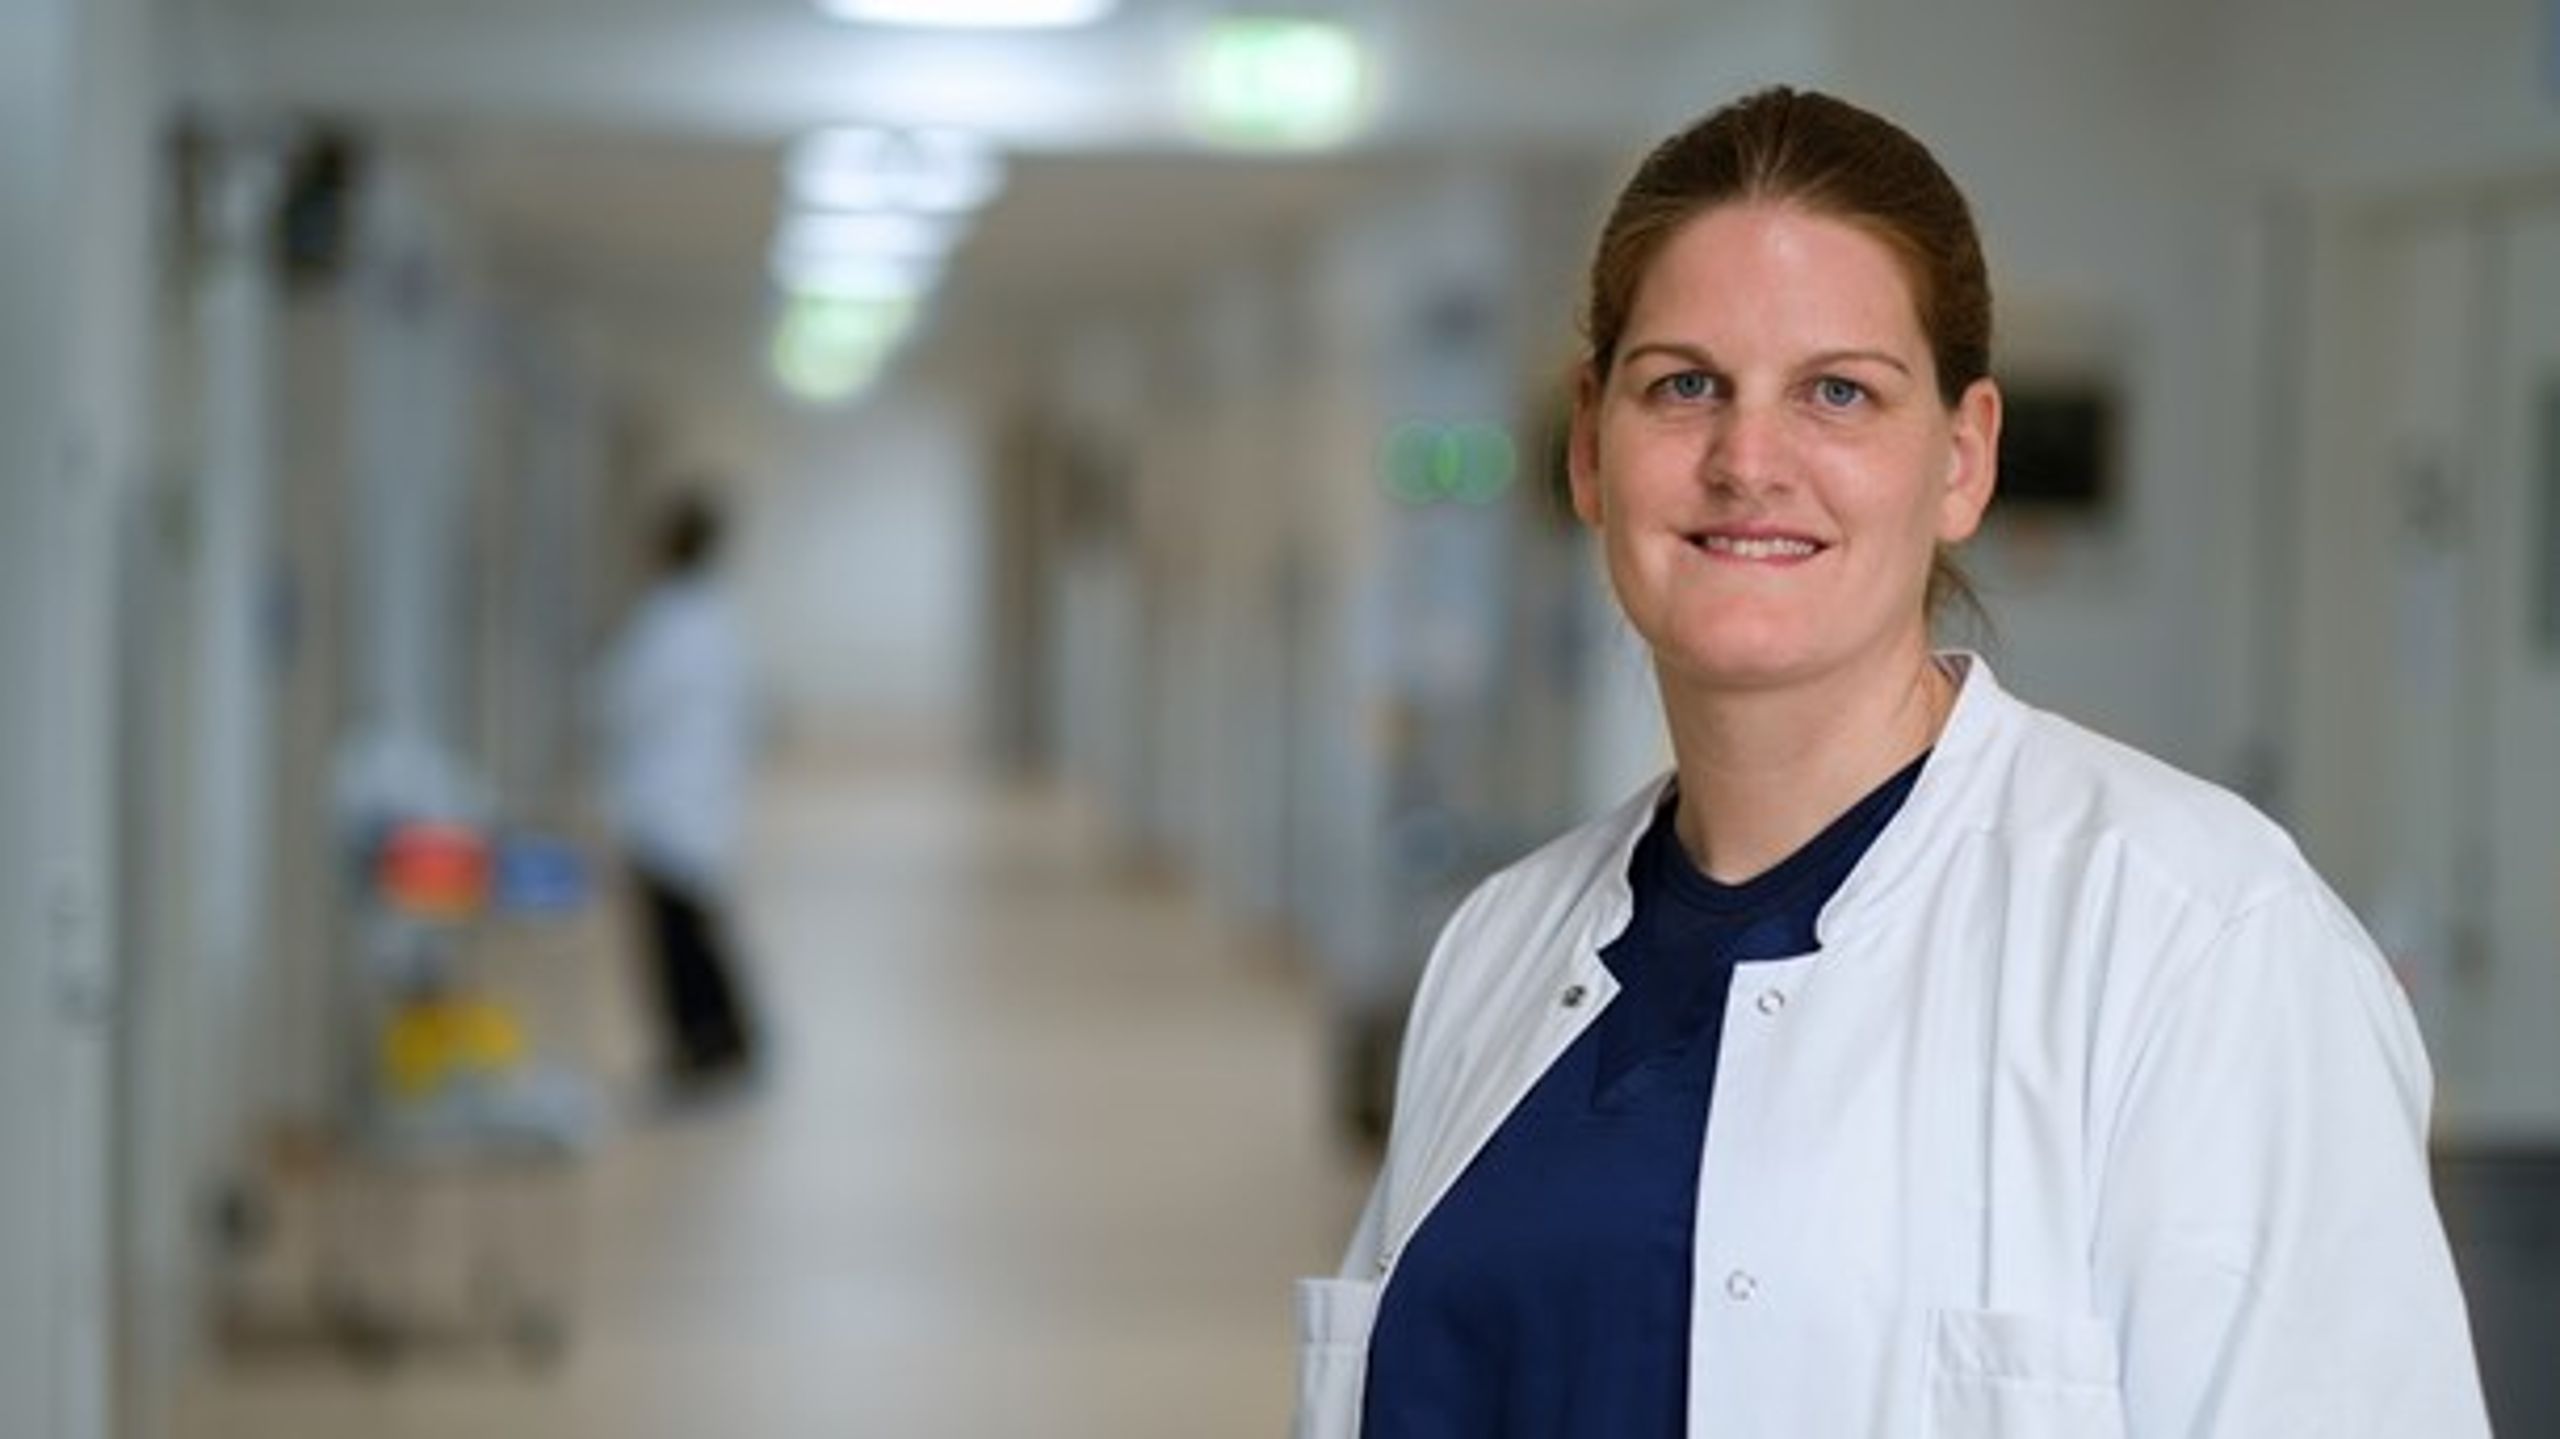 Sundhedssystemets succes i kampen mod coronavirussen skyldes blandt andet plads til lægelige ledere, skriver læge Christina Frøslev-Friis.